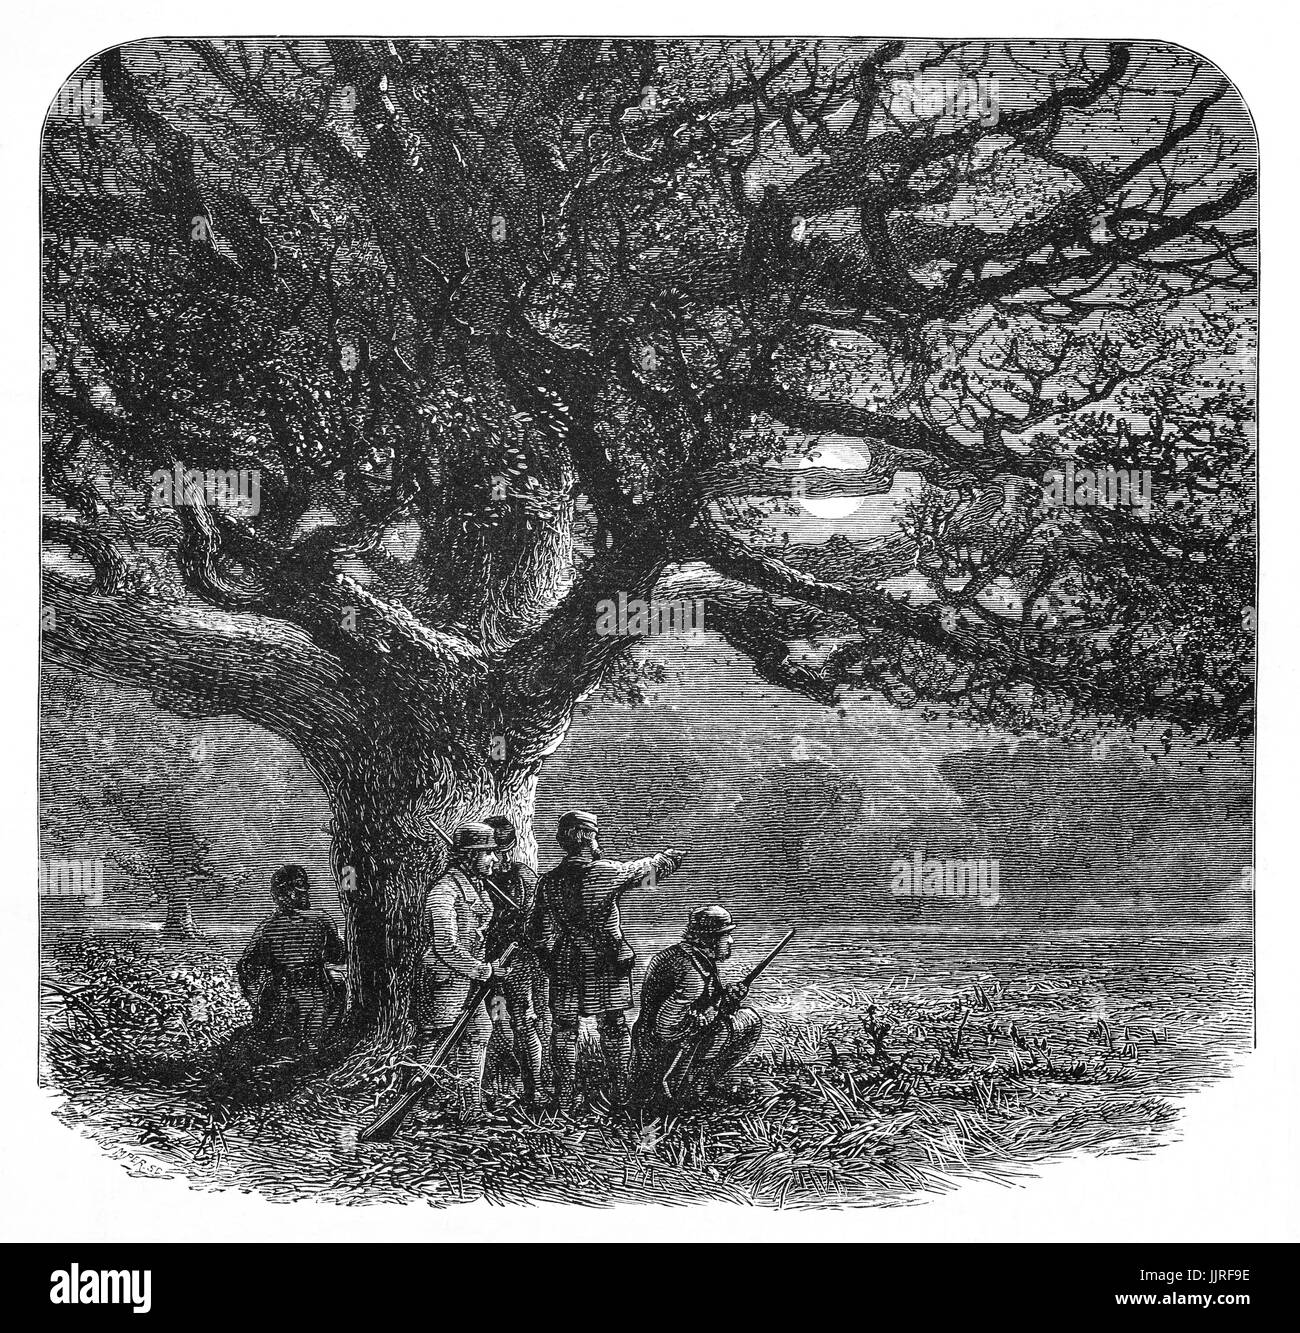 1870: Cazadores al borde de Virginia Water, creada originalmente como parte de la tierra de placer real, Windsor Great Park, Berkshire, Inglaterra Foto de stock